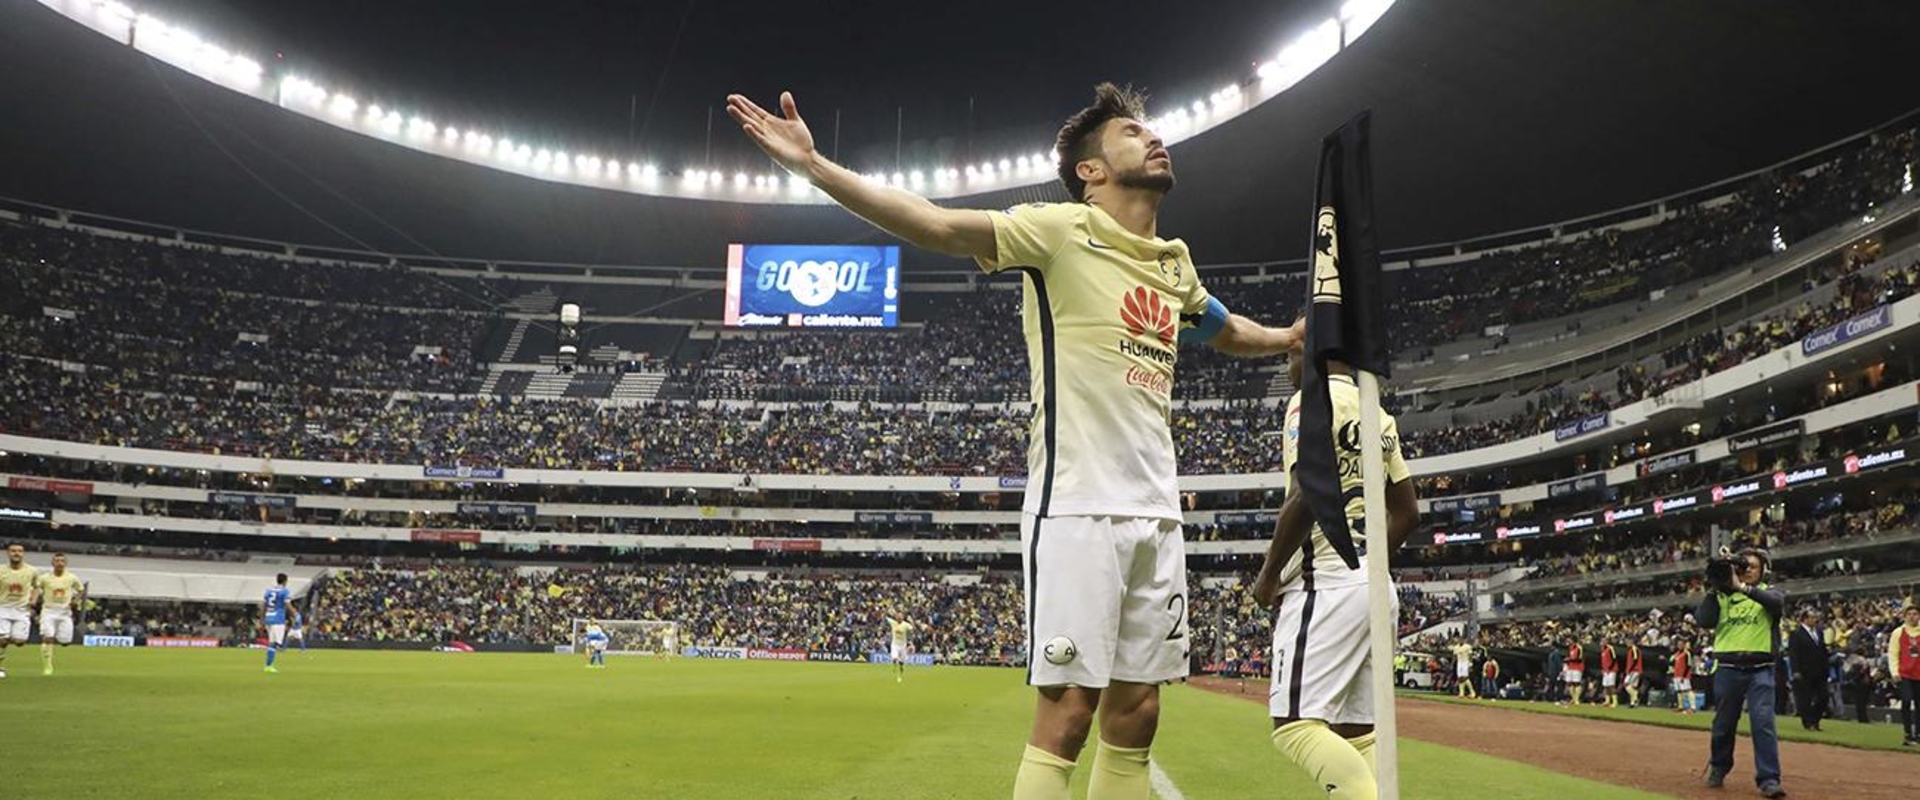 Az imádott és gyűlölt mexikói focióriás is belép az esportba